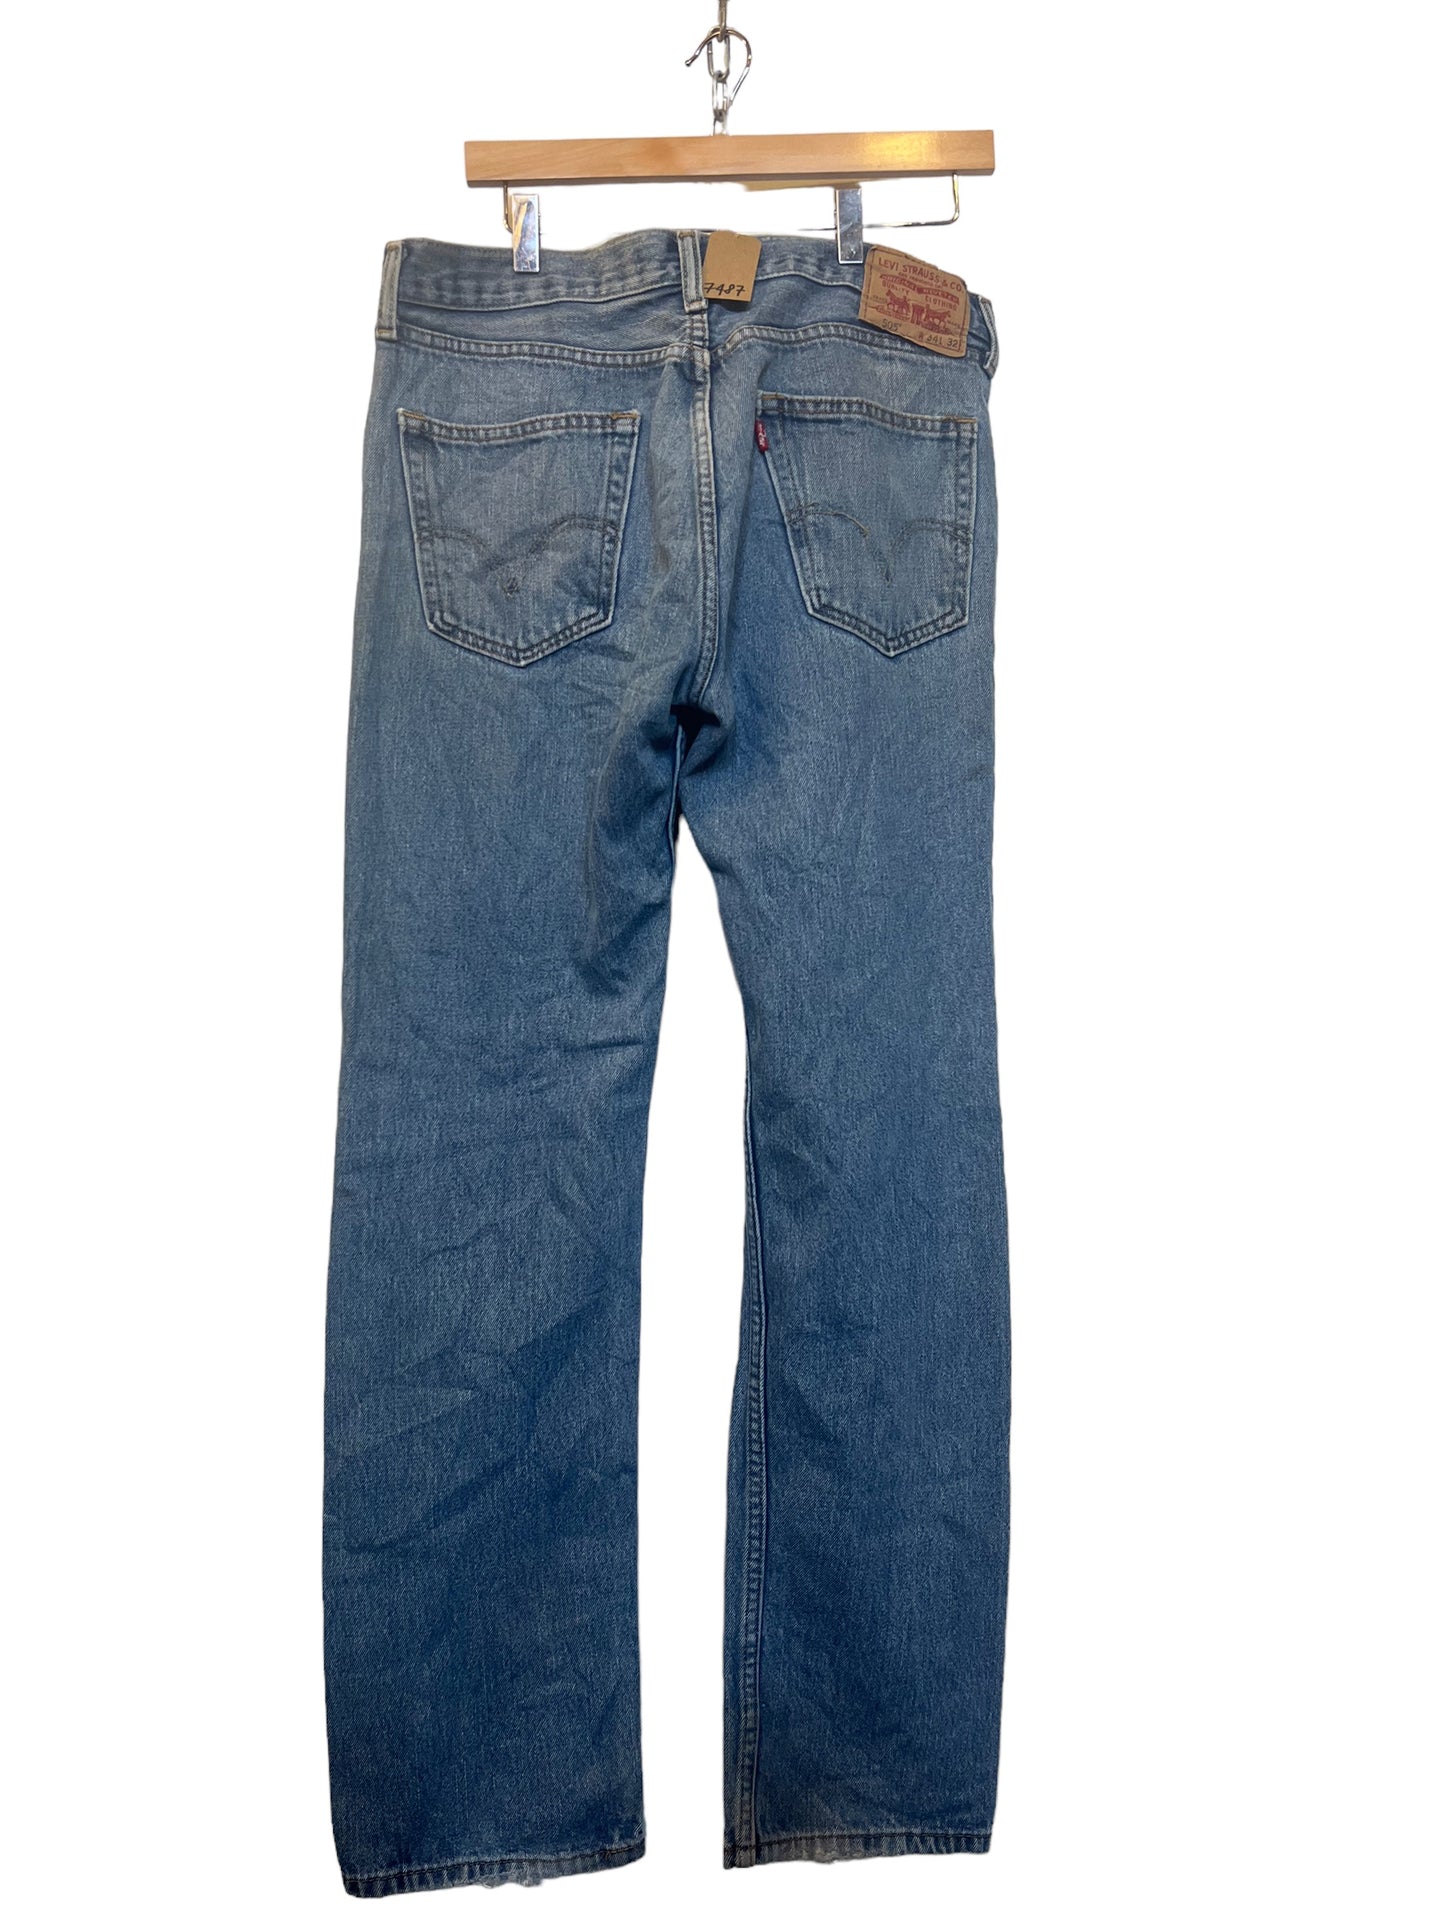 Levi 505 Jeans (34x32)